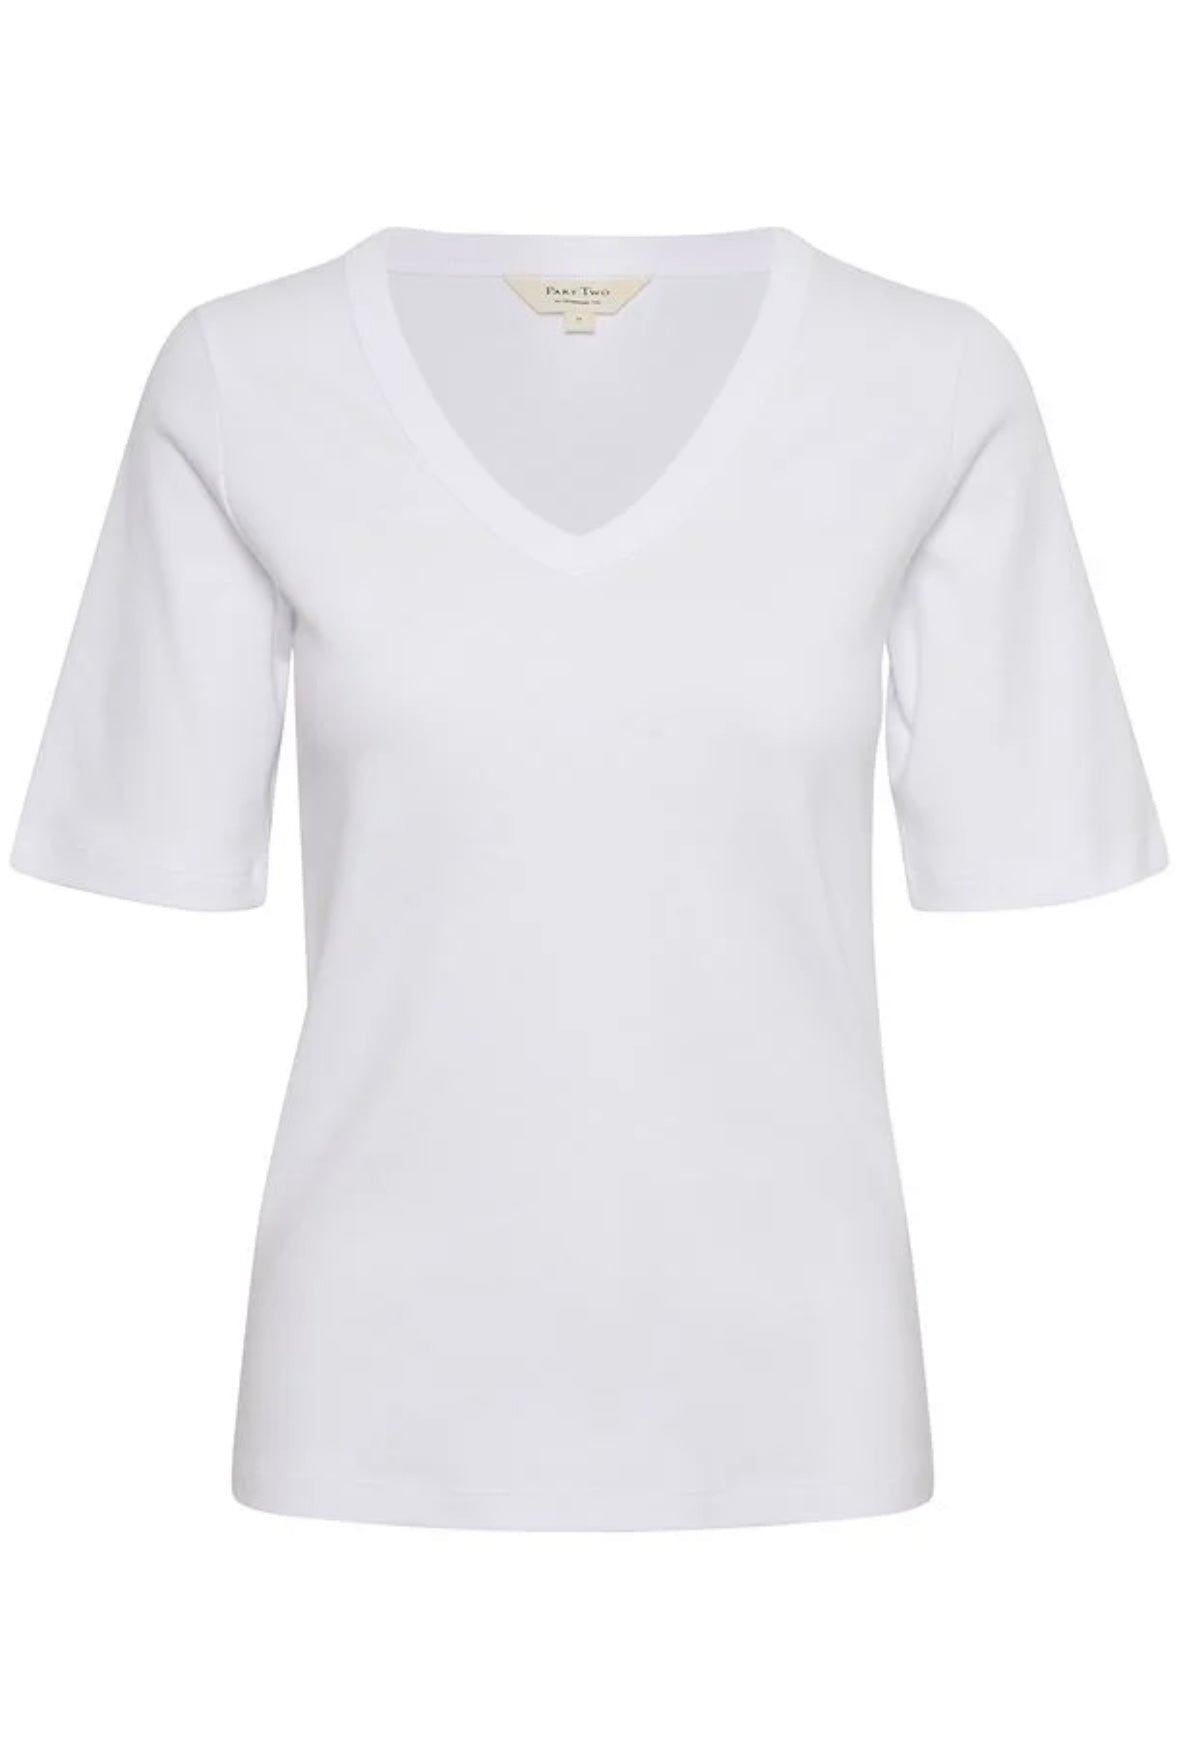 Part Two Ratansa t-shirt- Bright White